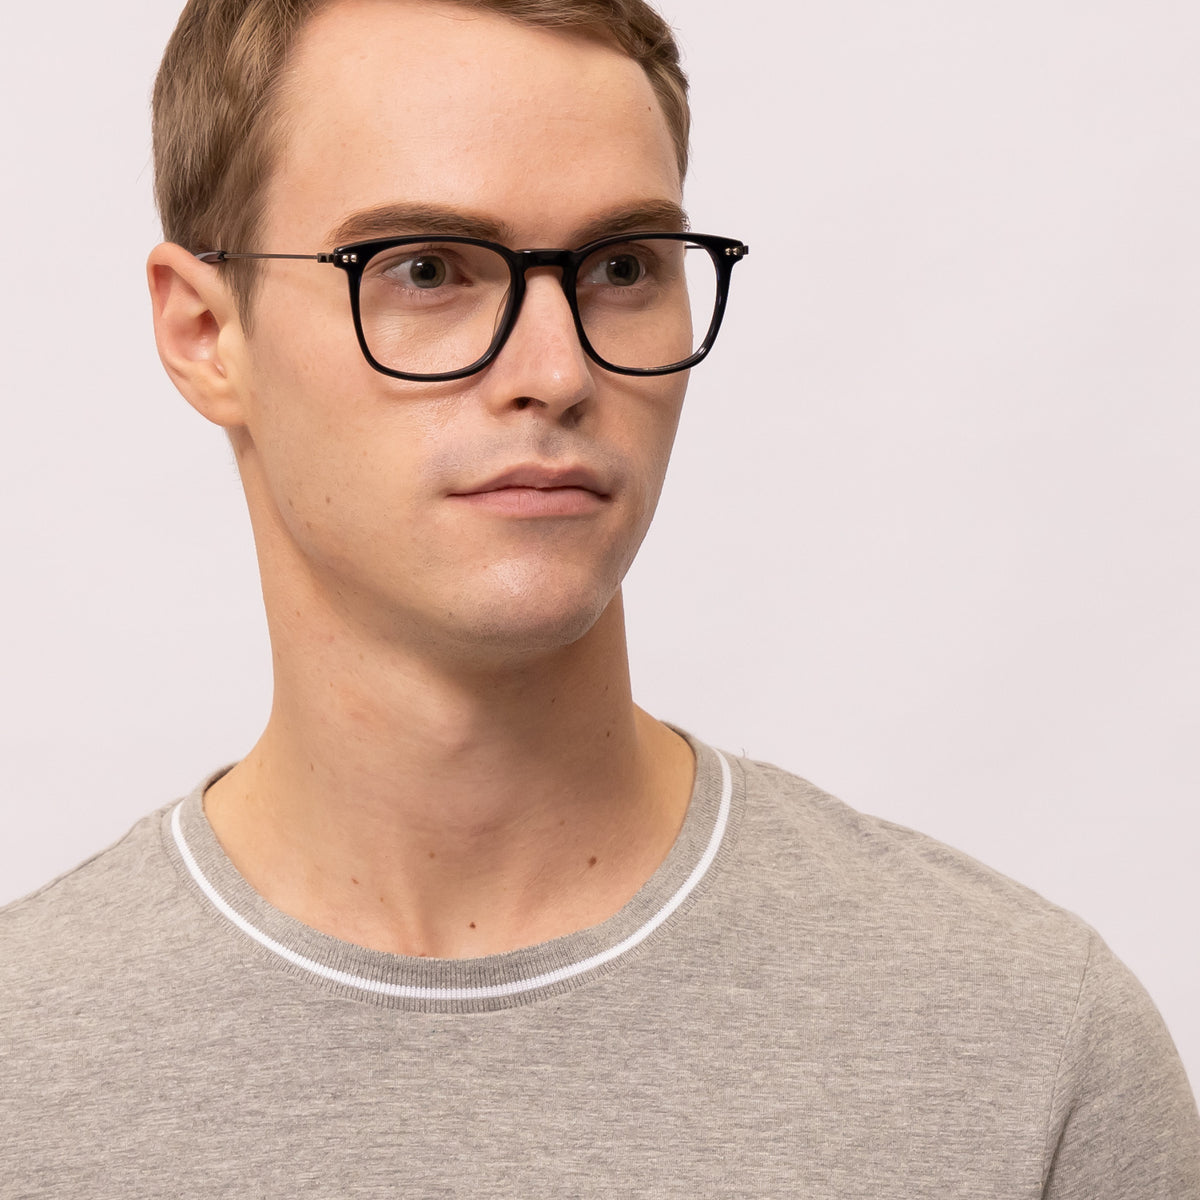 bravo square dark blue eyeglasses frames for men side view